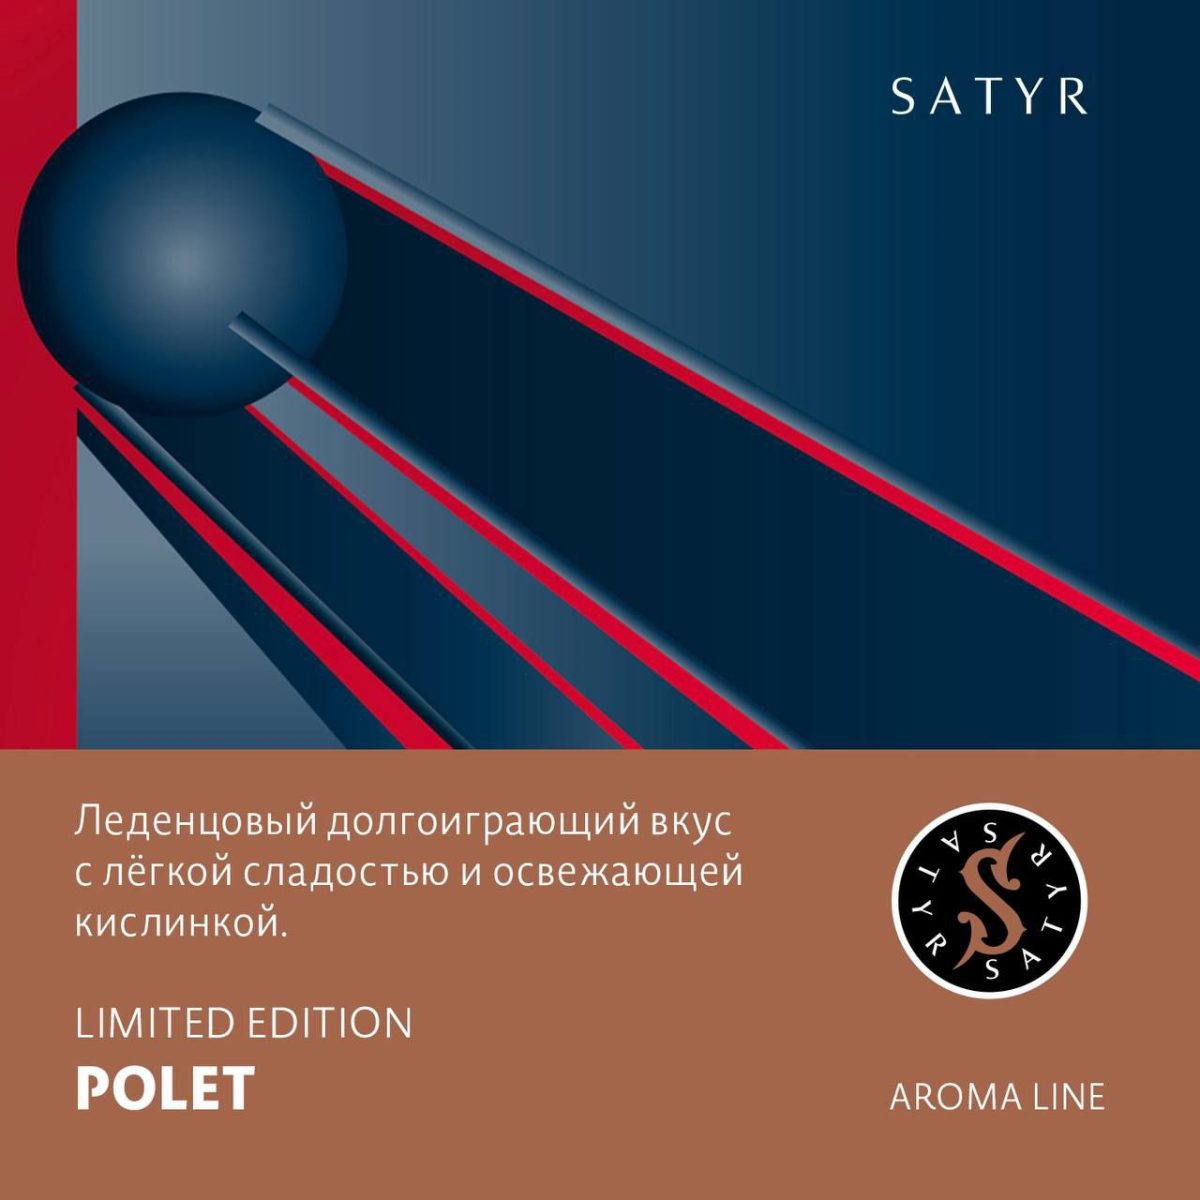 Табак для кальяна Satyr Aroma Line — Polet (карамельных конфет) 100гр фотография 1